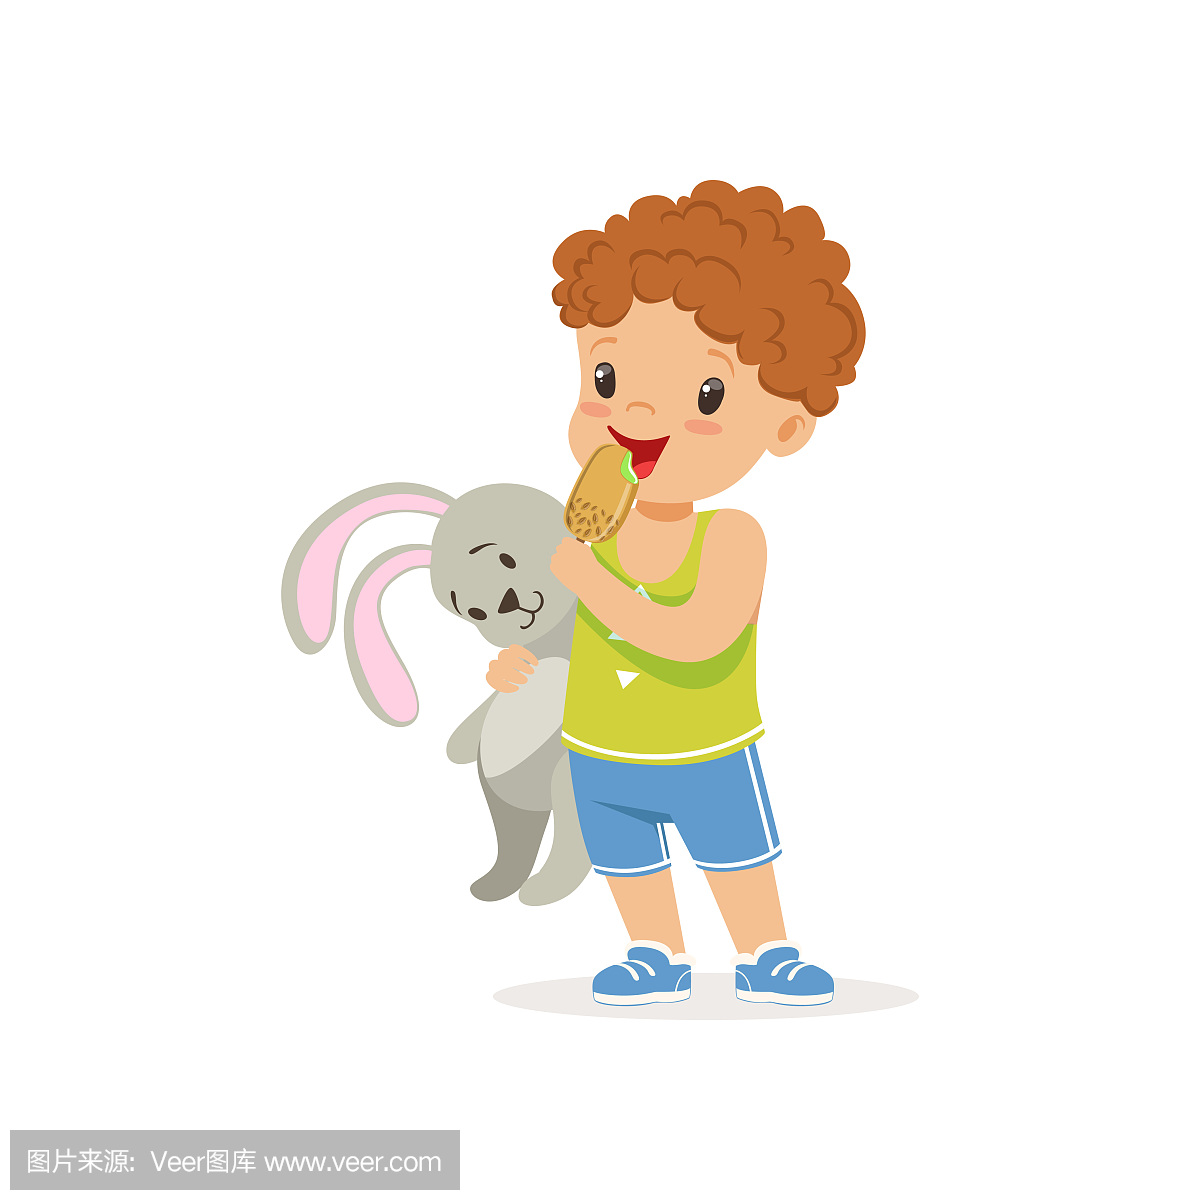 可爱的学龄前男孩抱着兔子玩具和在棒上吃美味